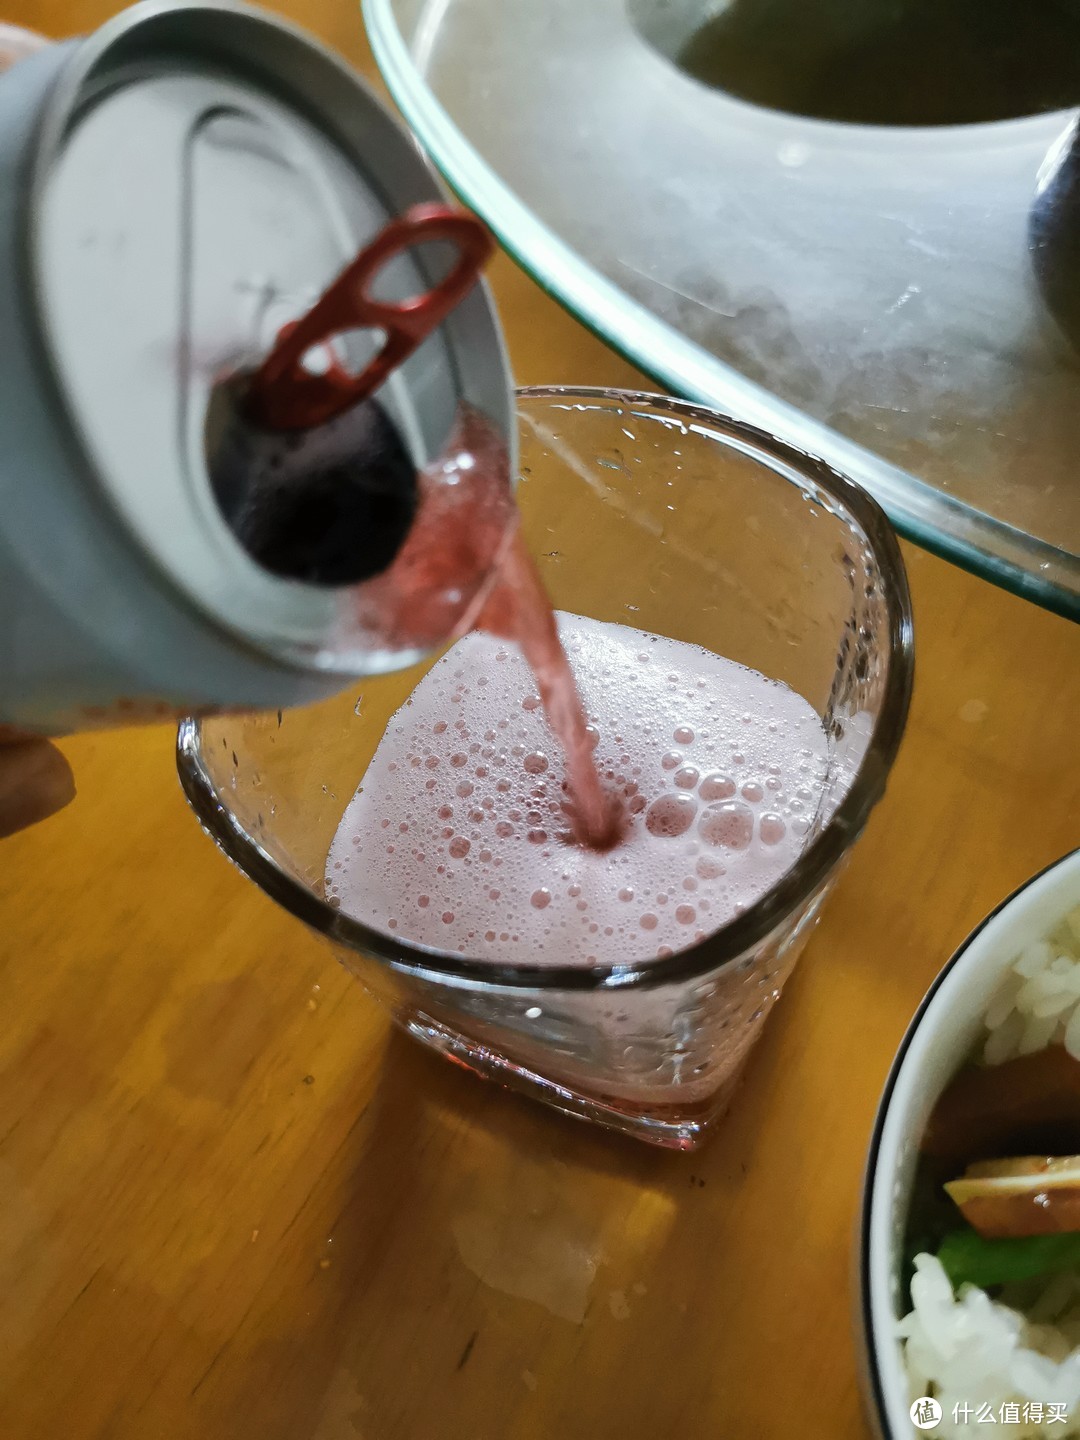 冲出来的就是今天的主角，千岛湖樱桃啤酒，红色的泡沫